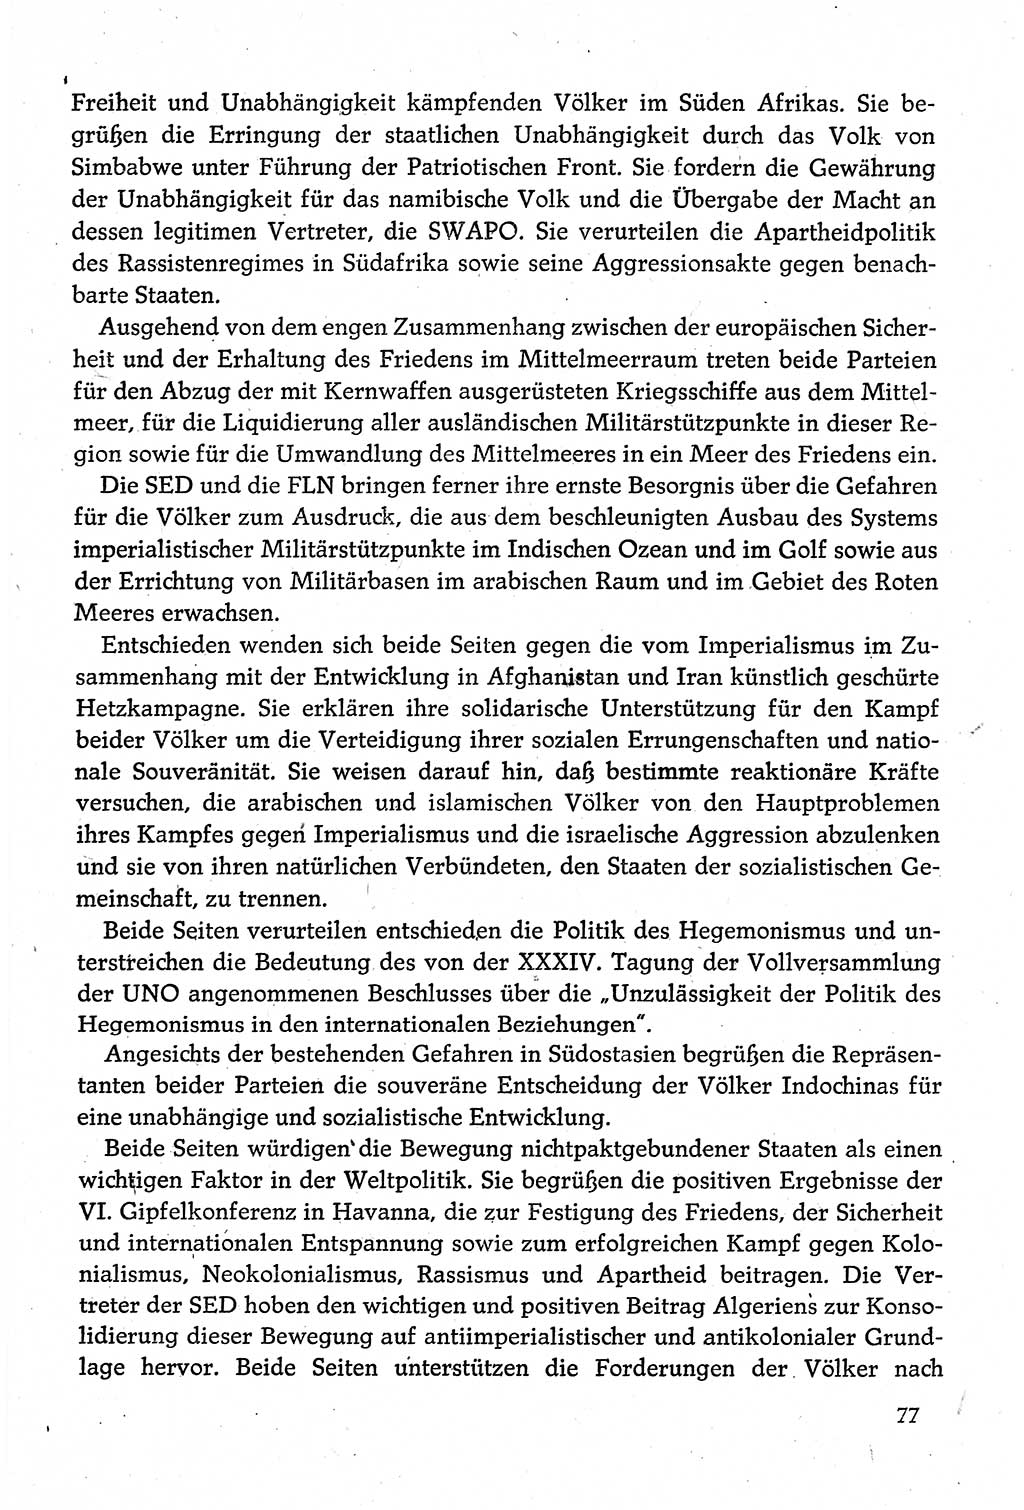 Dokumente der Sozialistischen Einheitspartei Deutschlands (SED) [Deutsche Demokratische Republik (DDR)] 1980-1981, Seite 77 (Dok. SED DDR 1980-1981, S. 77)